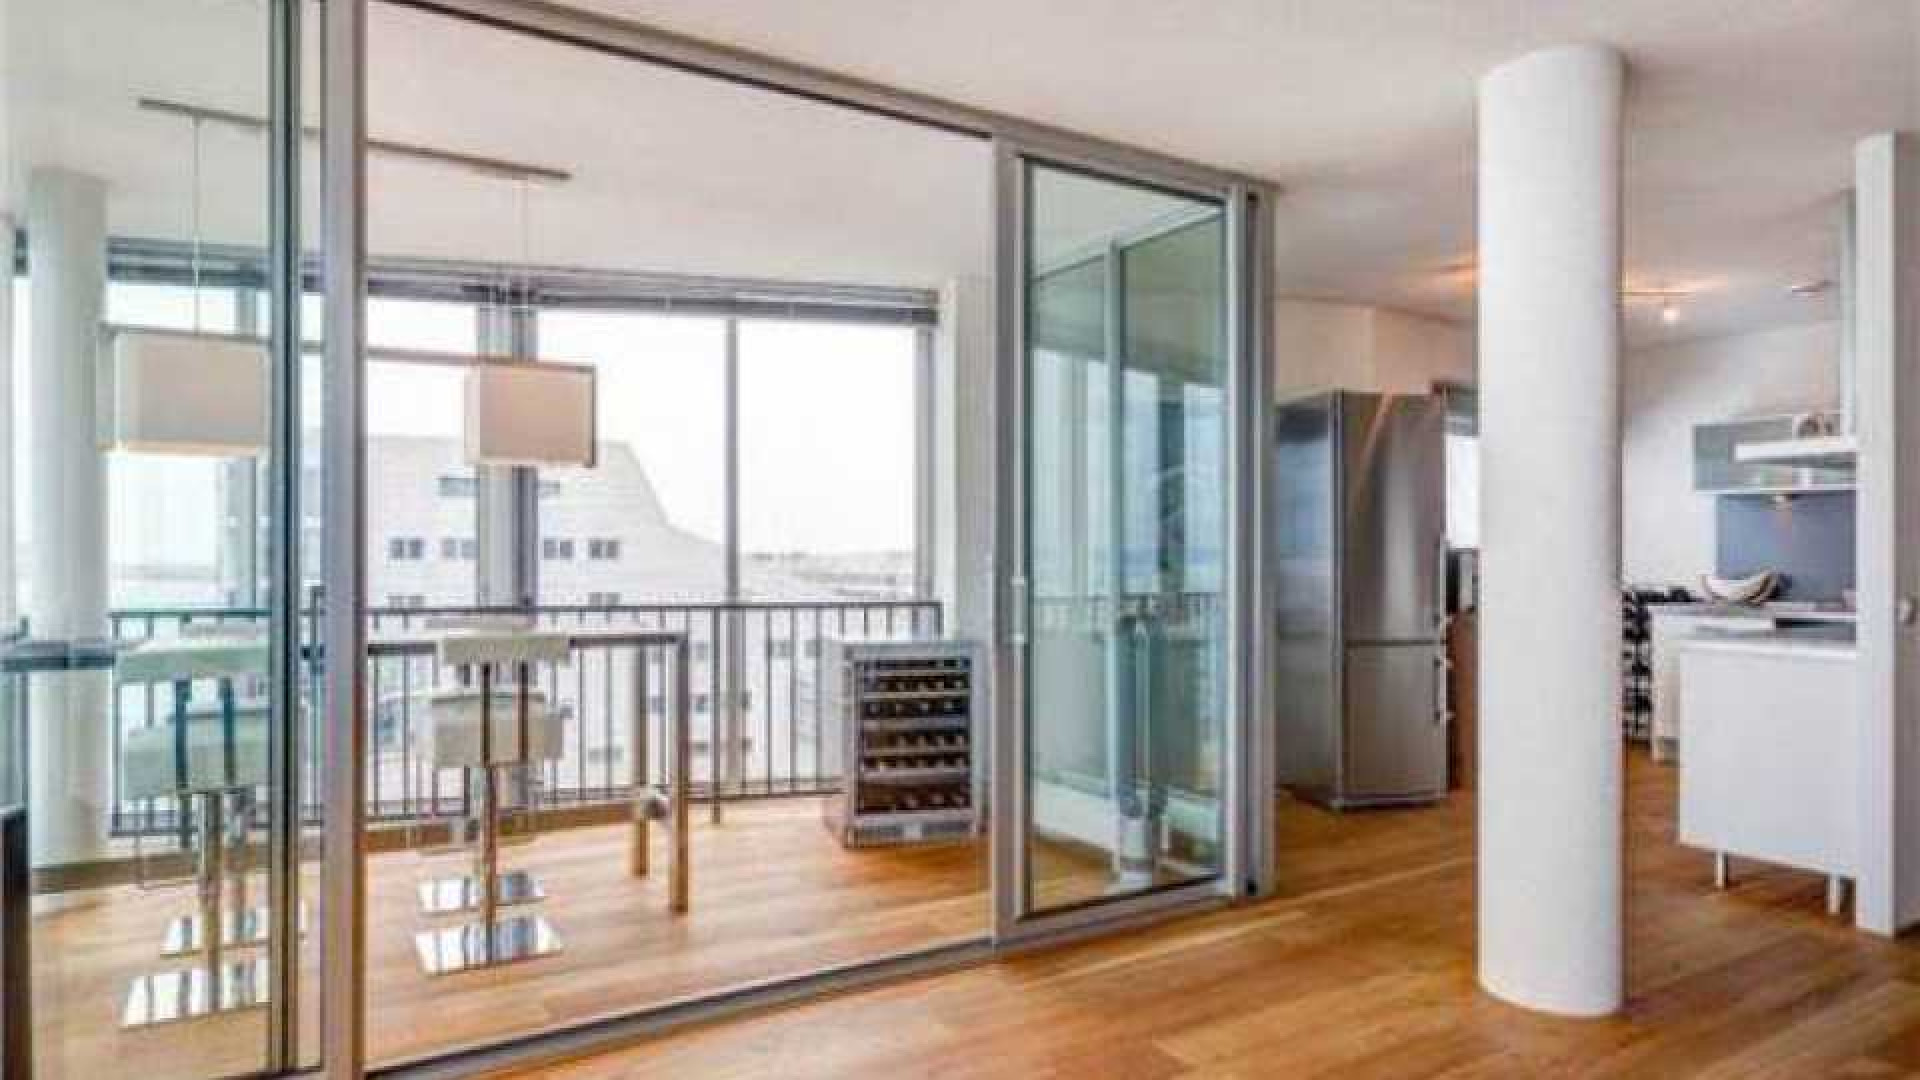 Thomas Berge ruilt riante villa met botenhuis in voor appartement. 7